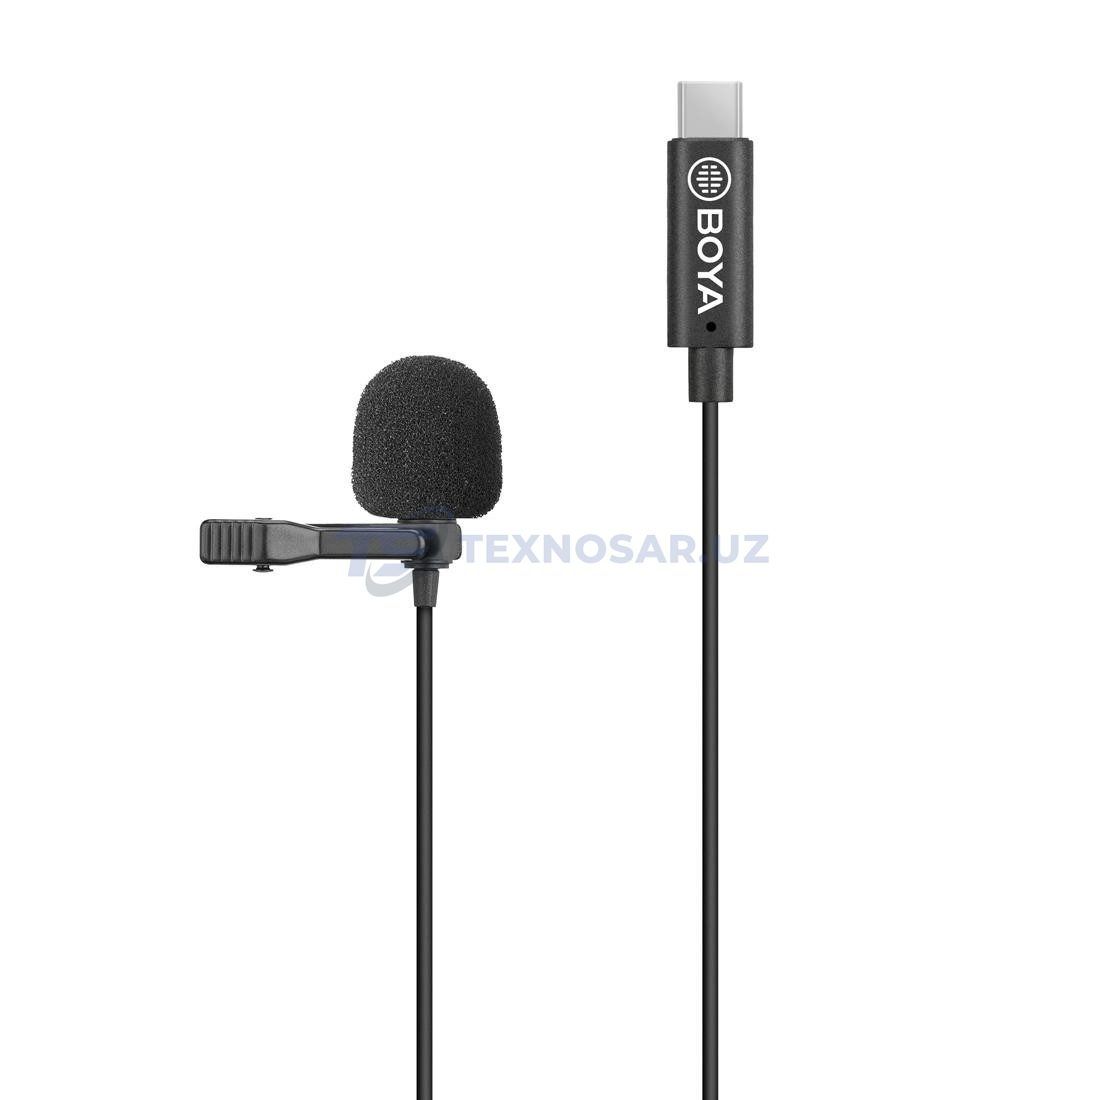 BOYA BY-M3-OP Всенаправленный петличный микрофон для DJI ОСМО pocket